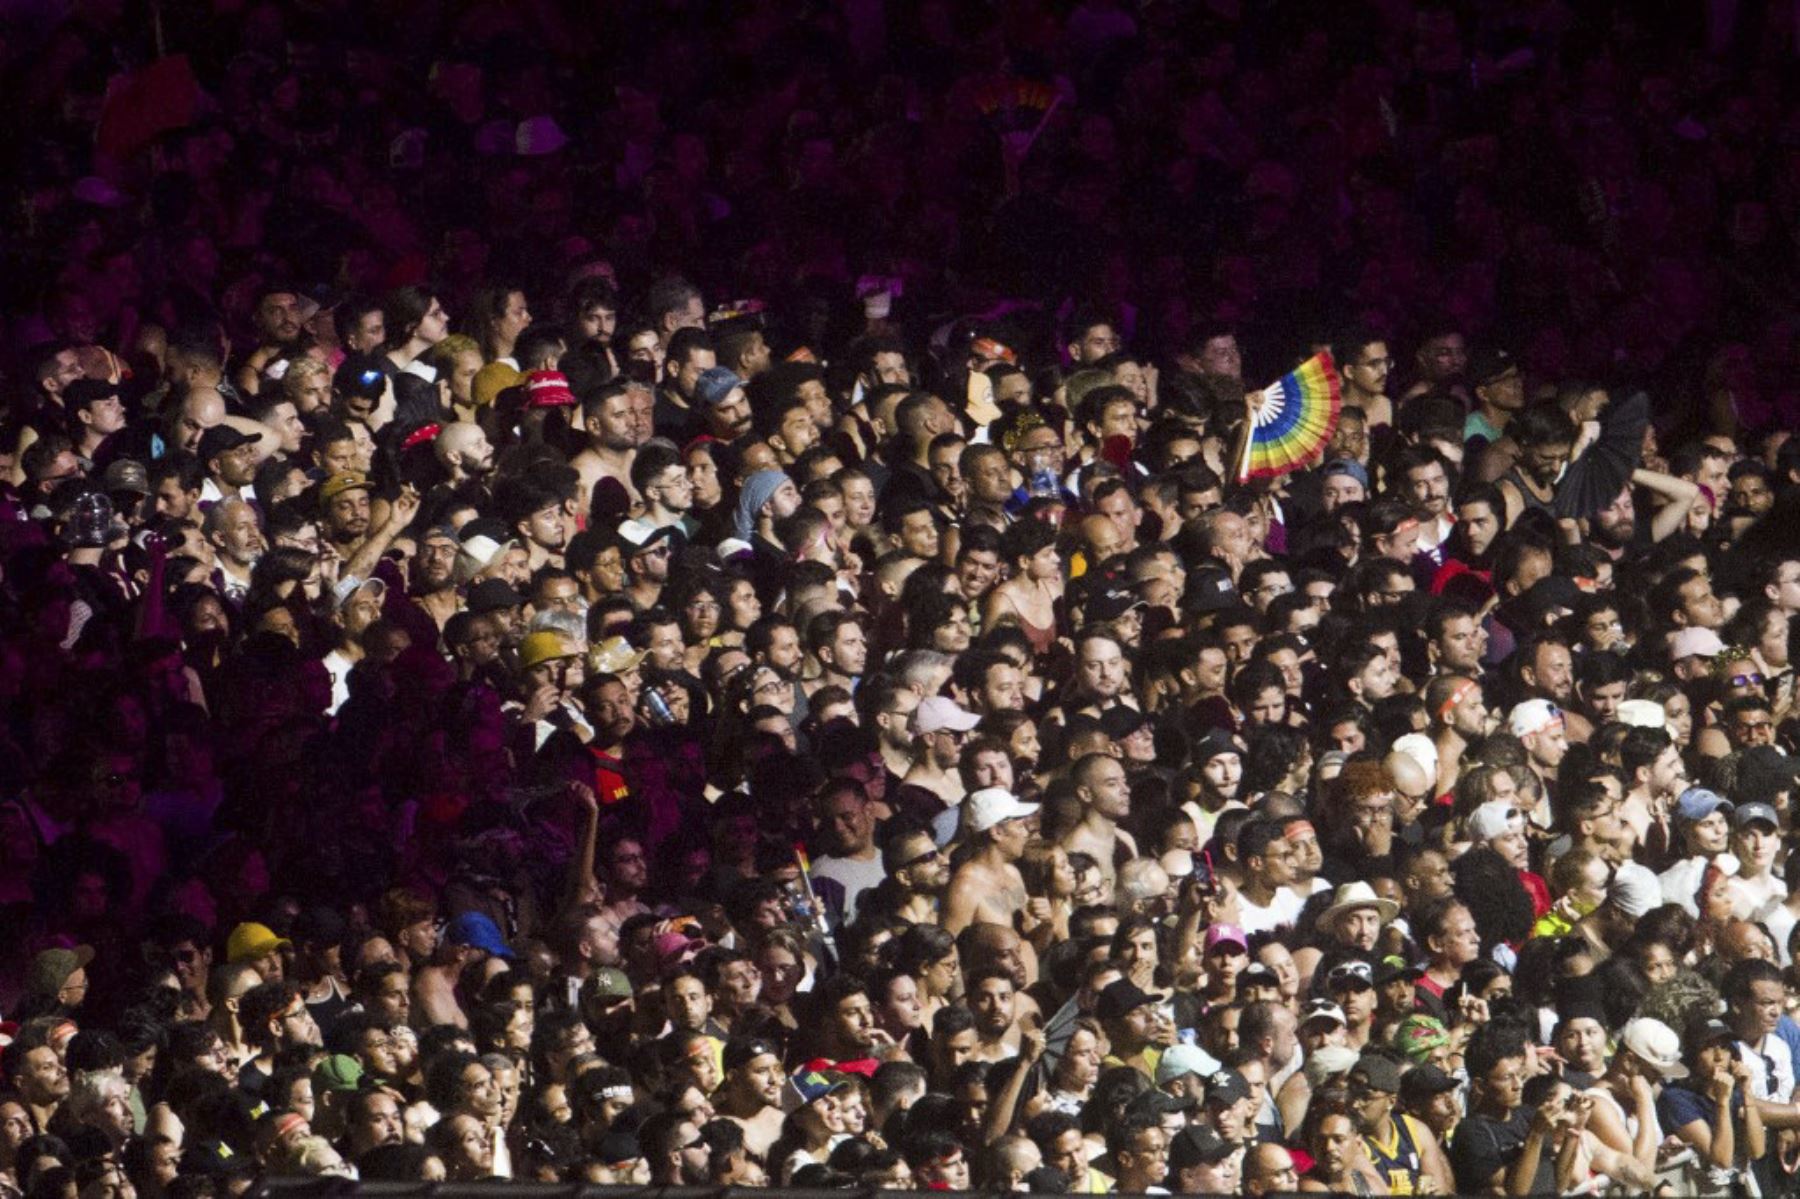 La multitud disfruta del espectáculo inaugural del DJ estadounidense Diplo antes de la actuación de la estrella del pop estadounidense Madonna en un concierto gratuito en la playa de Copacabana en Río de Janeiro, Brasil, el 4 de mayo de 2024.†. Madonna concluirá su "The Celebration Tour" con una actuación que se espera atraiga a 1,5 millones de entusiastas fans. Foto: AFP